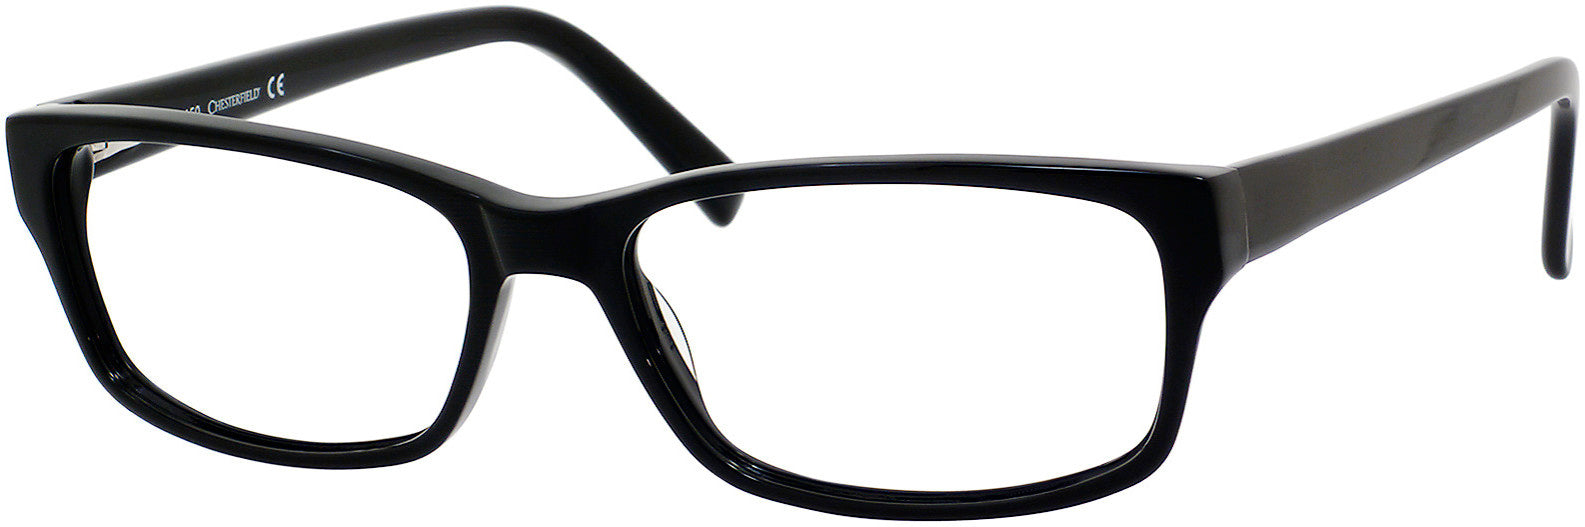  Chesterfield 16 XL Rectangular Eyeglasses 0807-0807  Black (00 Demo Lens)